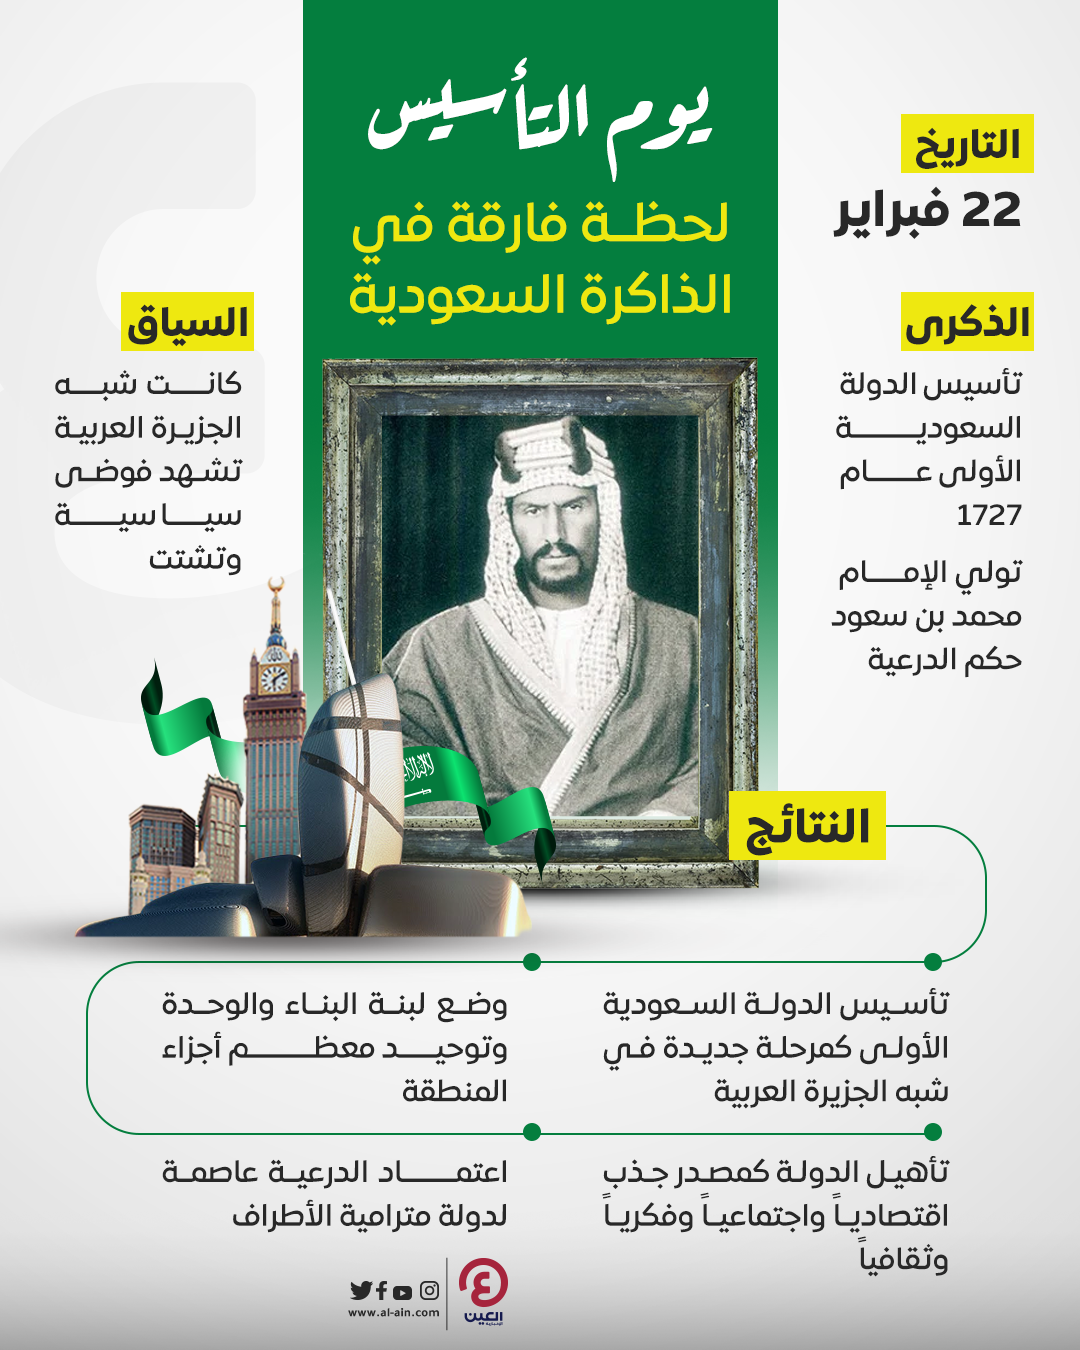 عاصمة بيت السعودية الثانية اصبحت العلم الدولة الدرعية